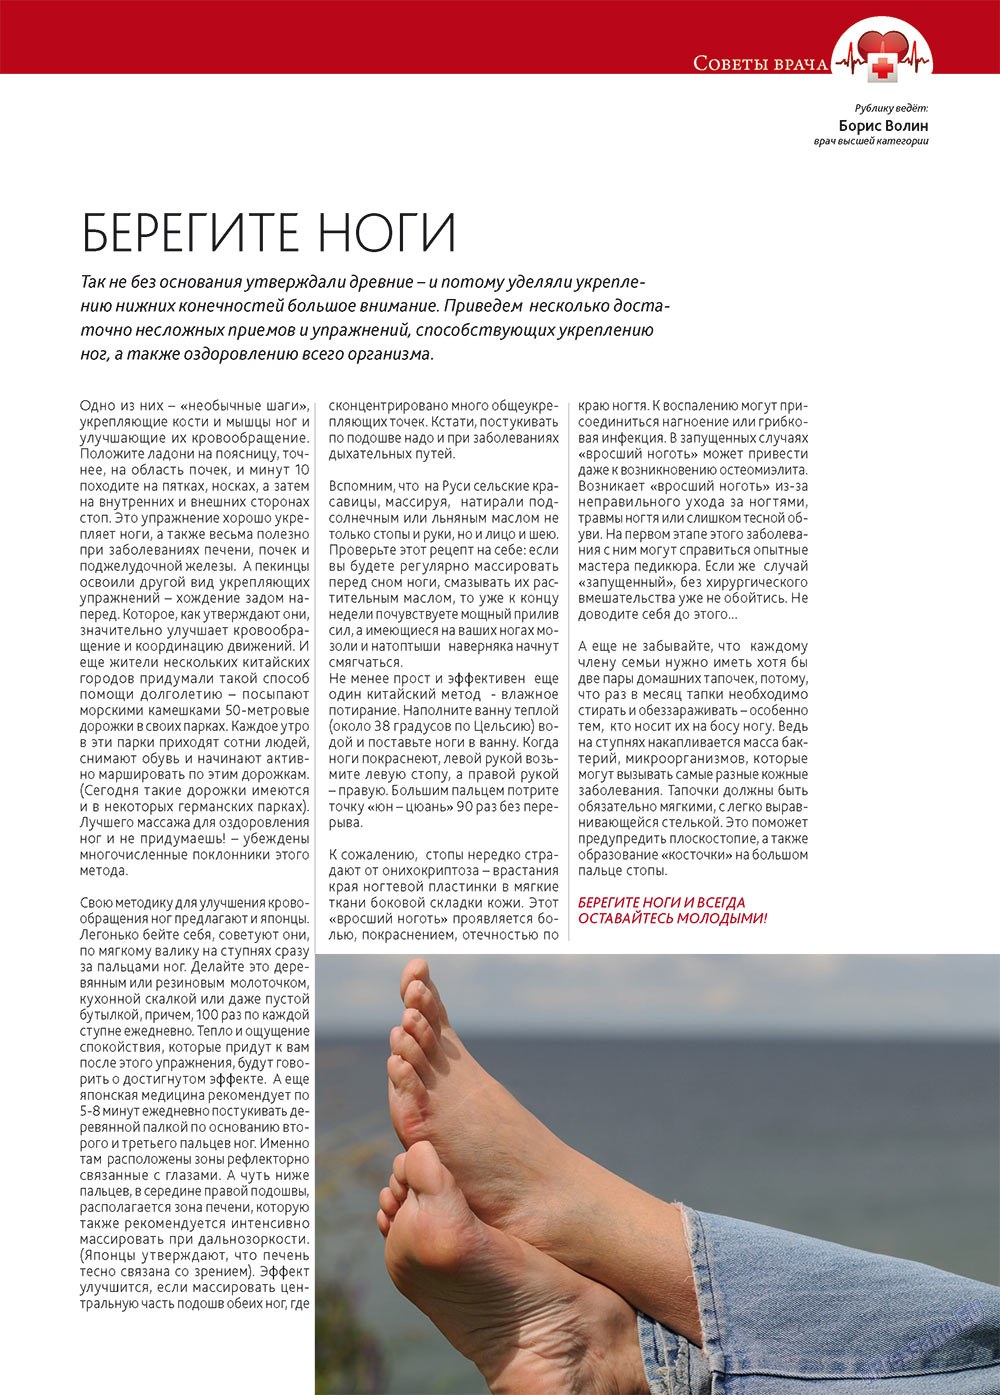 Афиша Augsburg (журнал). 2013 год, номер 1, стр. 10